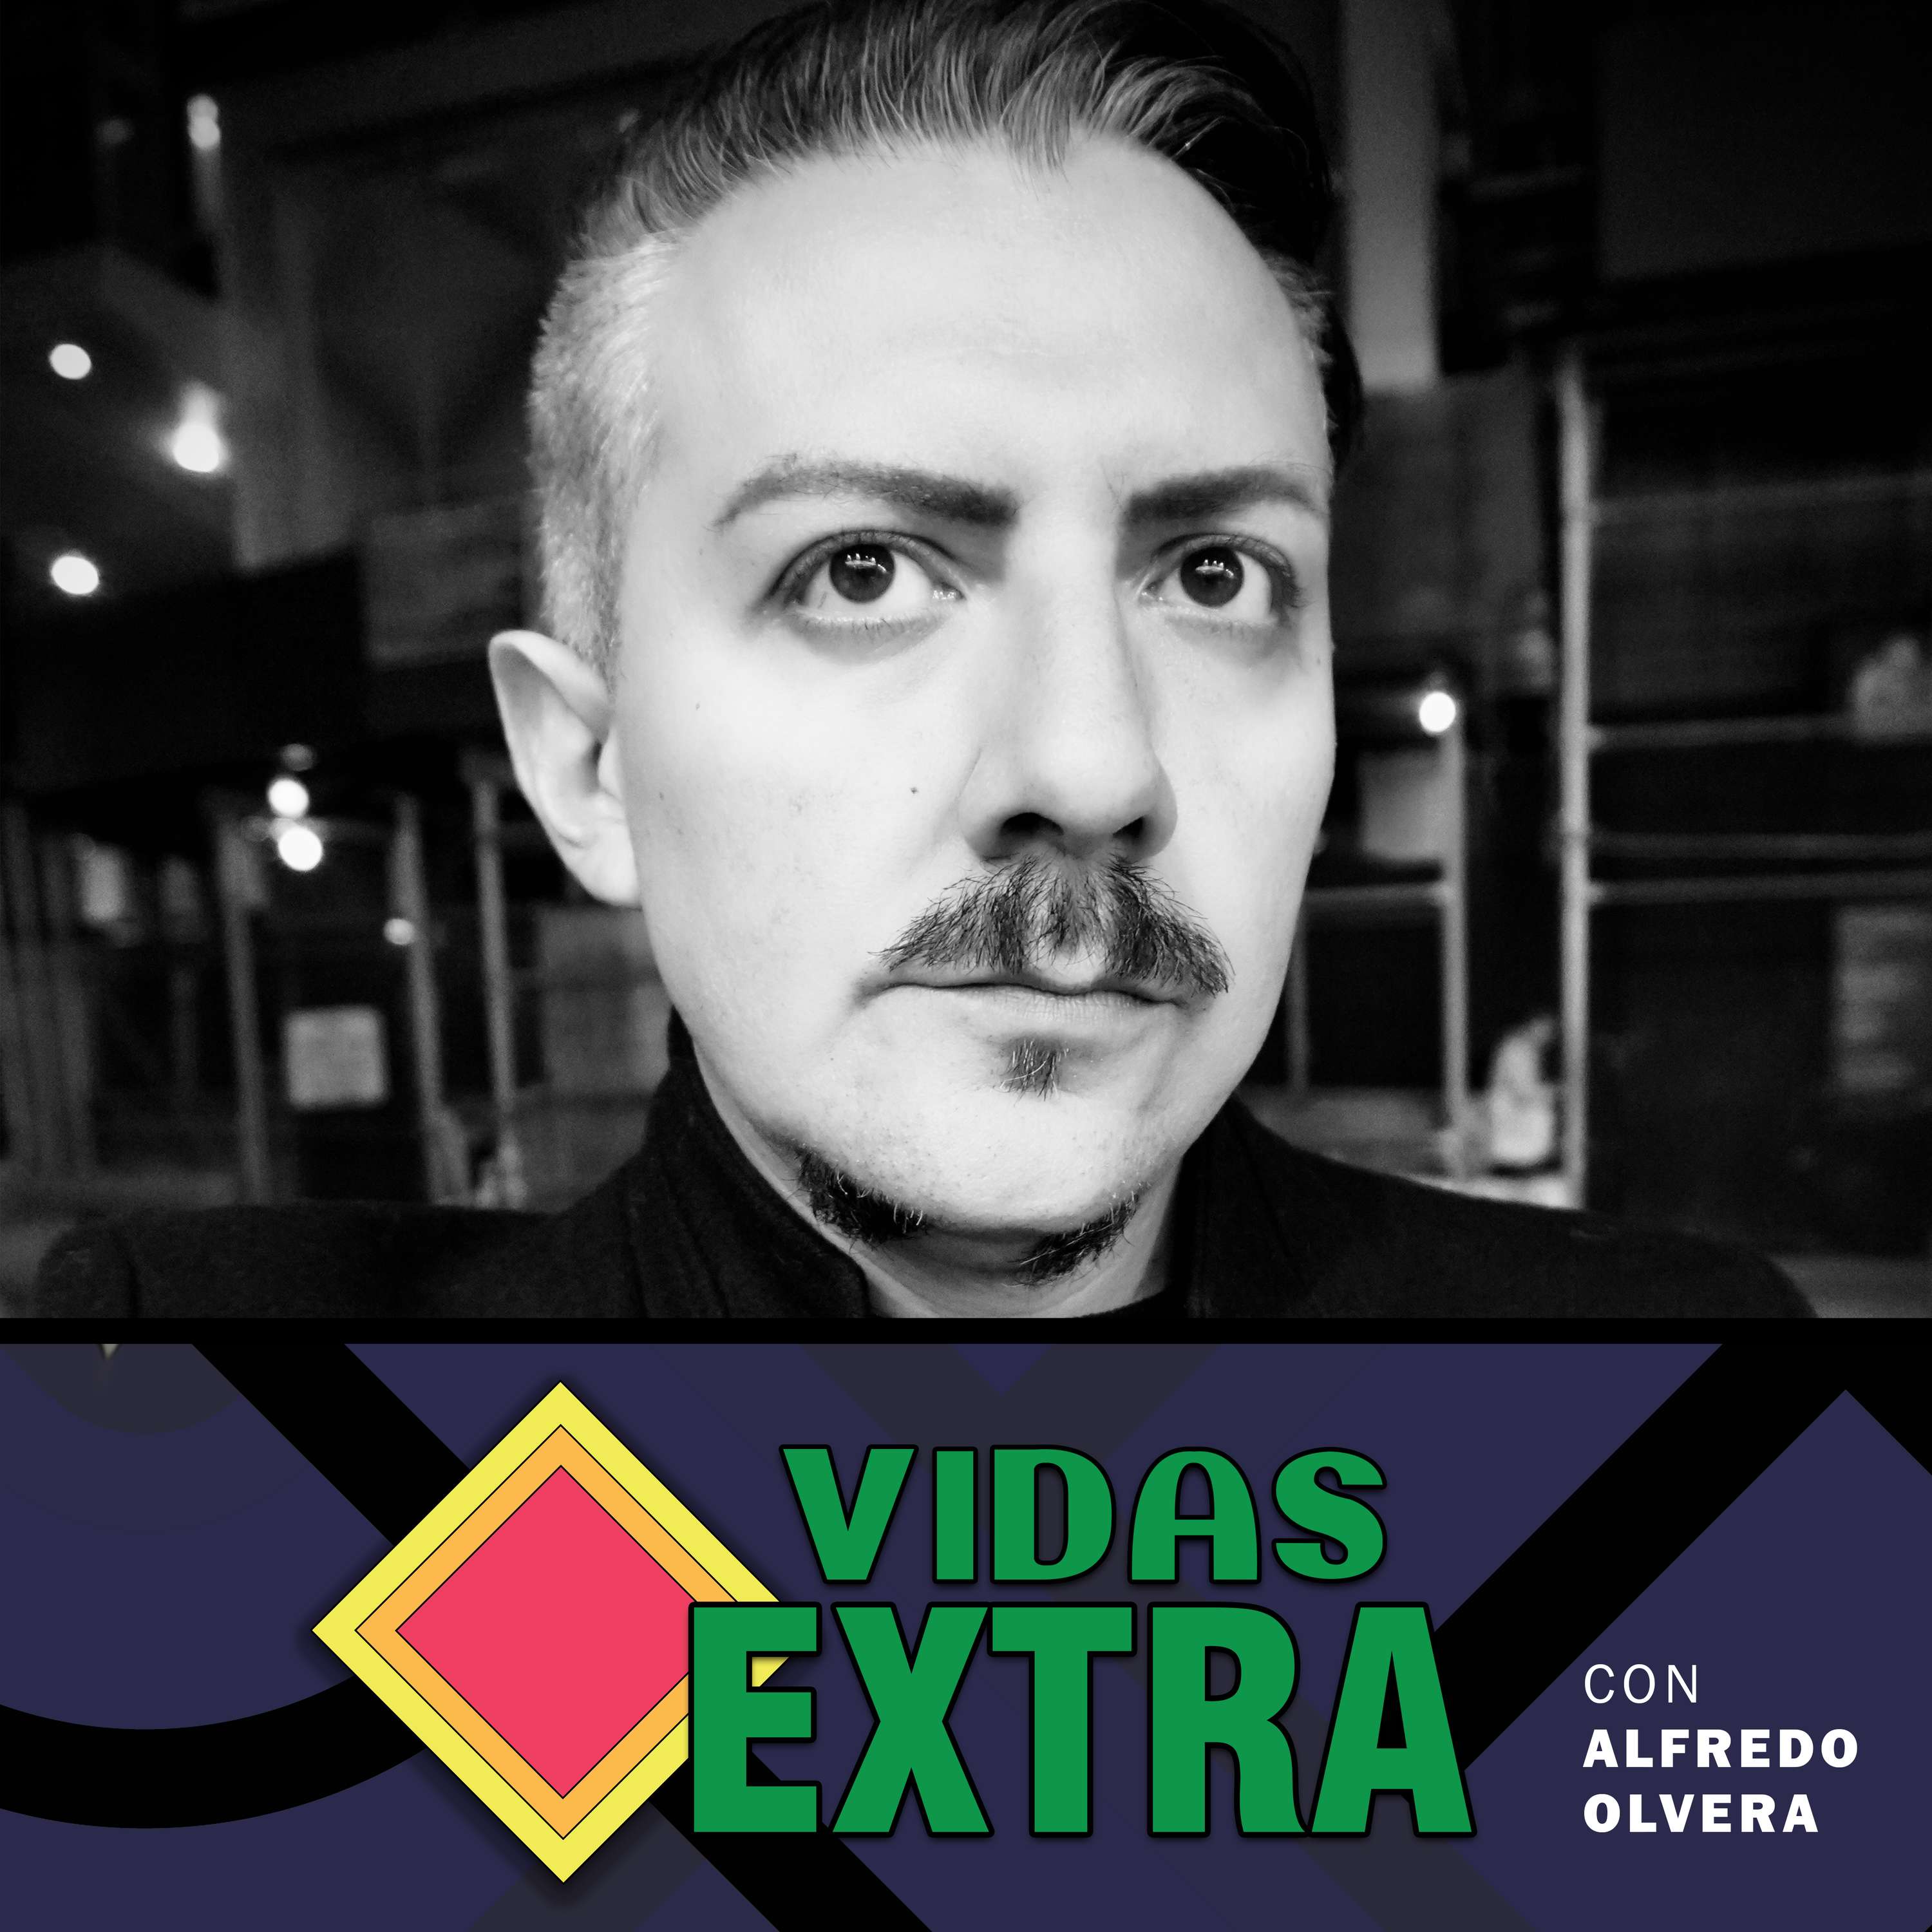 Miguel Sandoval ”Asher” - Atomix, Gamers TV, BRCDEvg